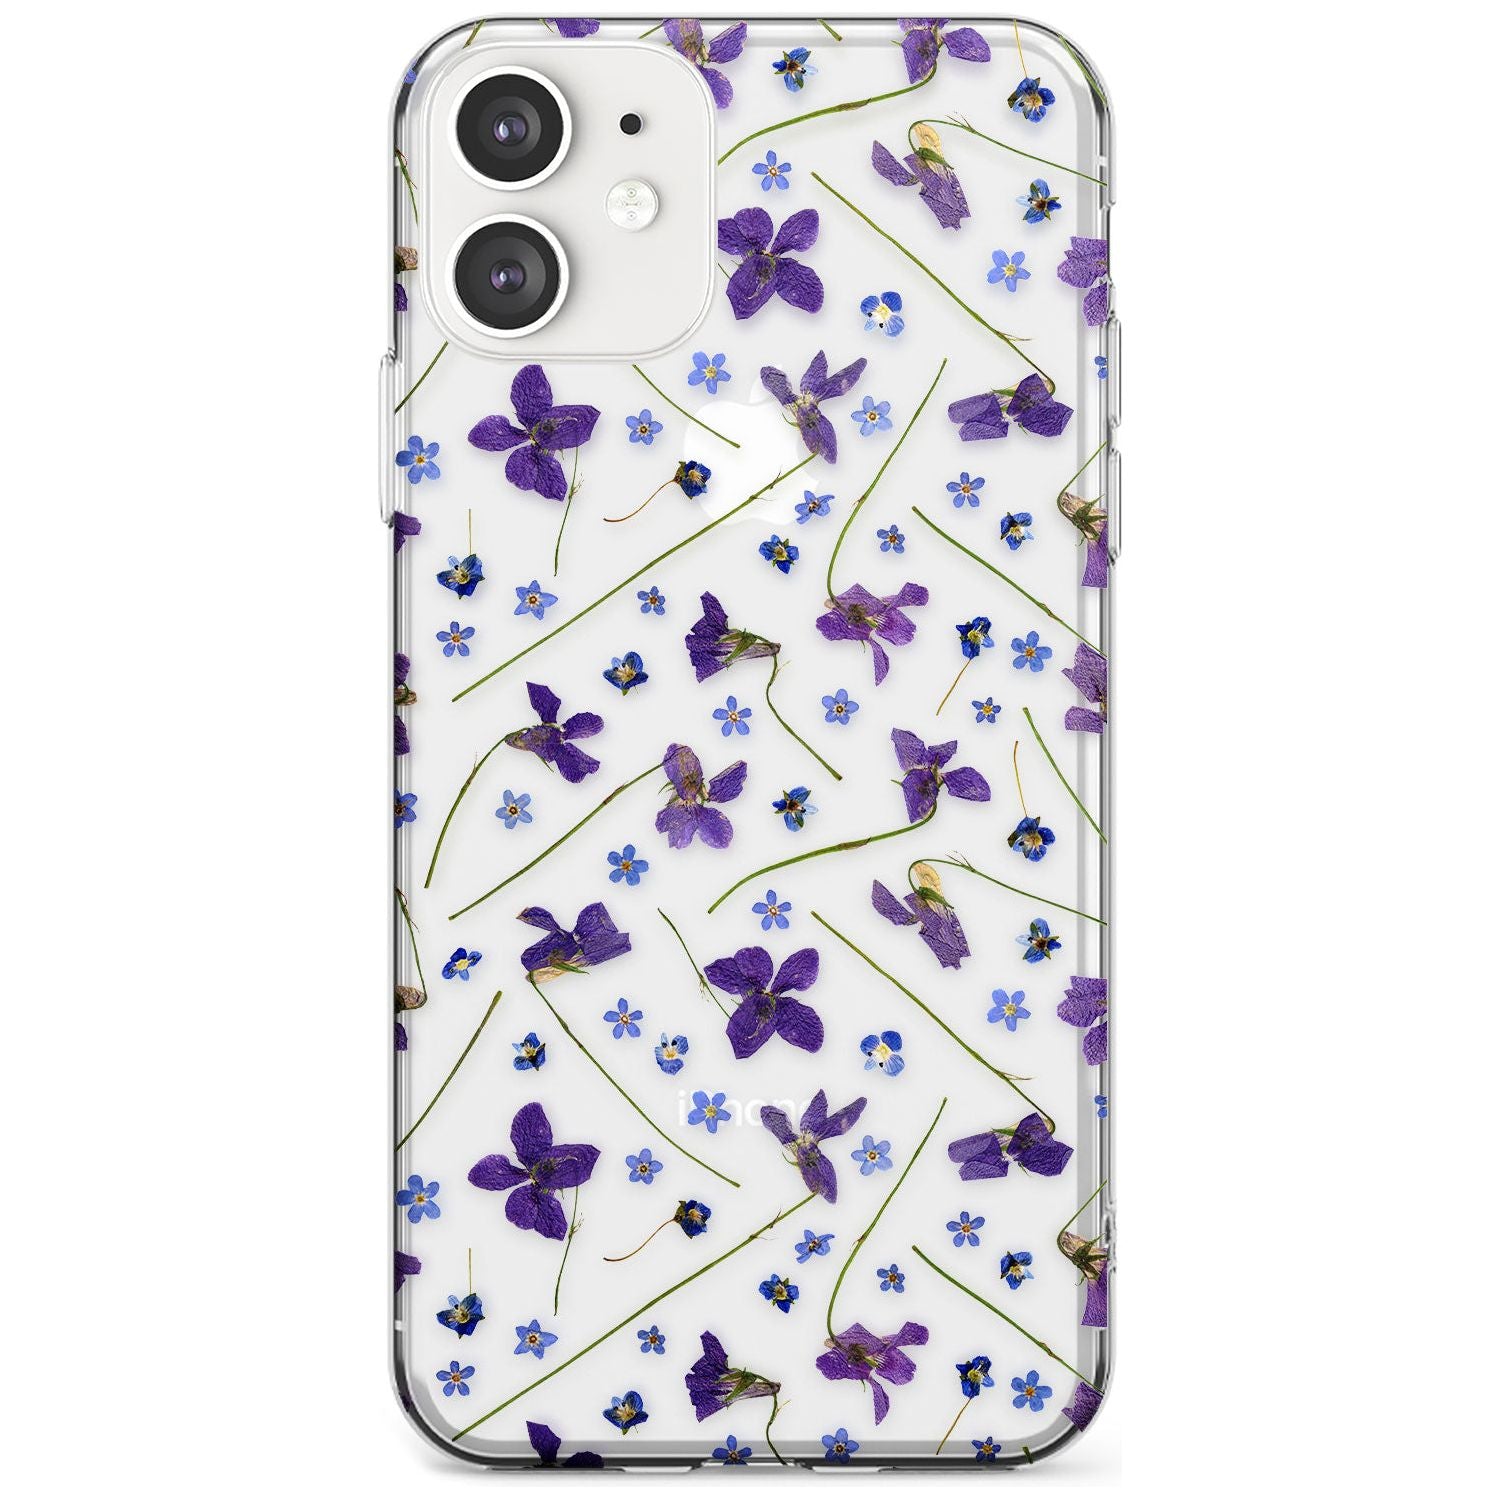 Violet & Blue Floral Pattern Design Slim TPU Phone Case for iPhone 11